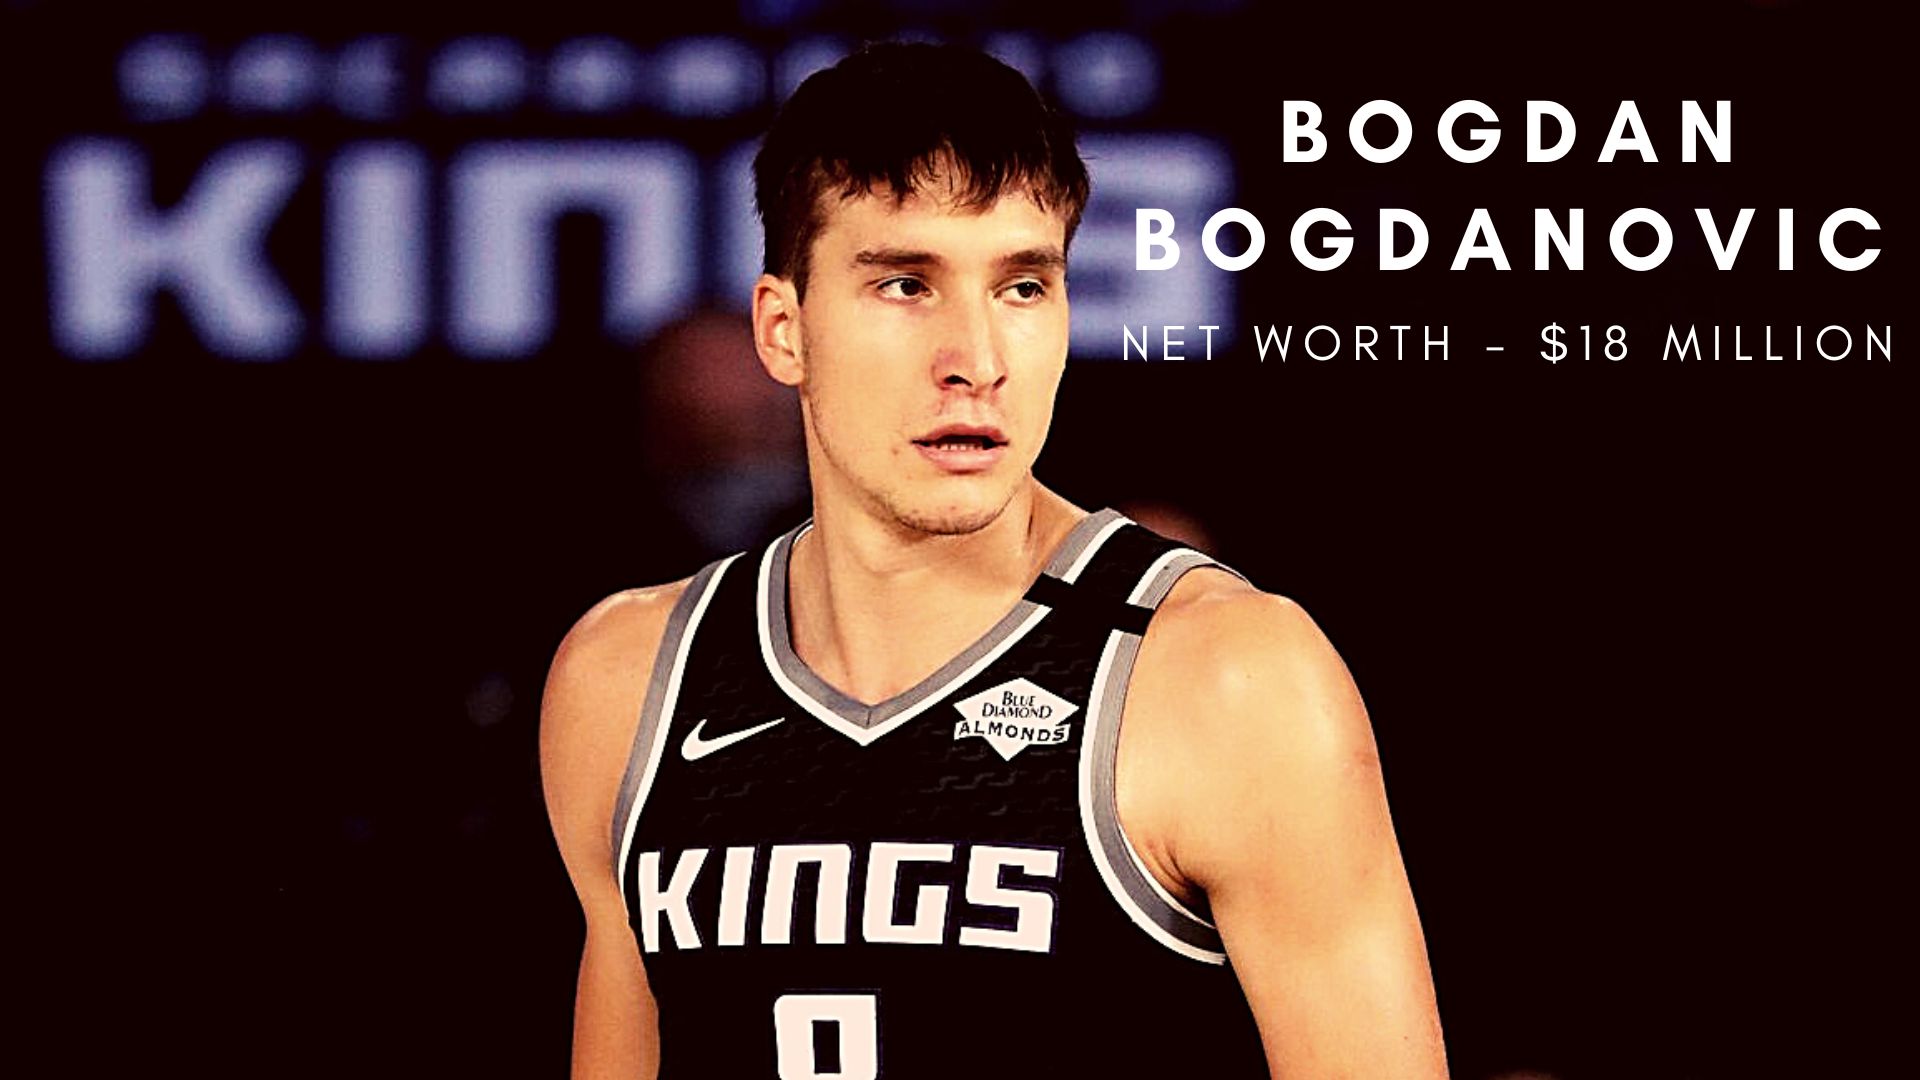 Bogdan Bogdanovic net worth